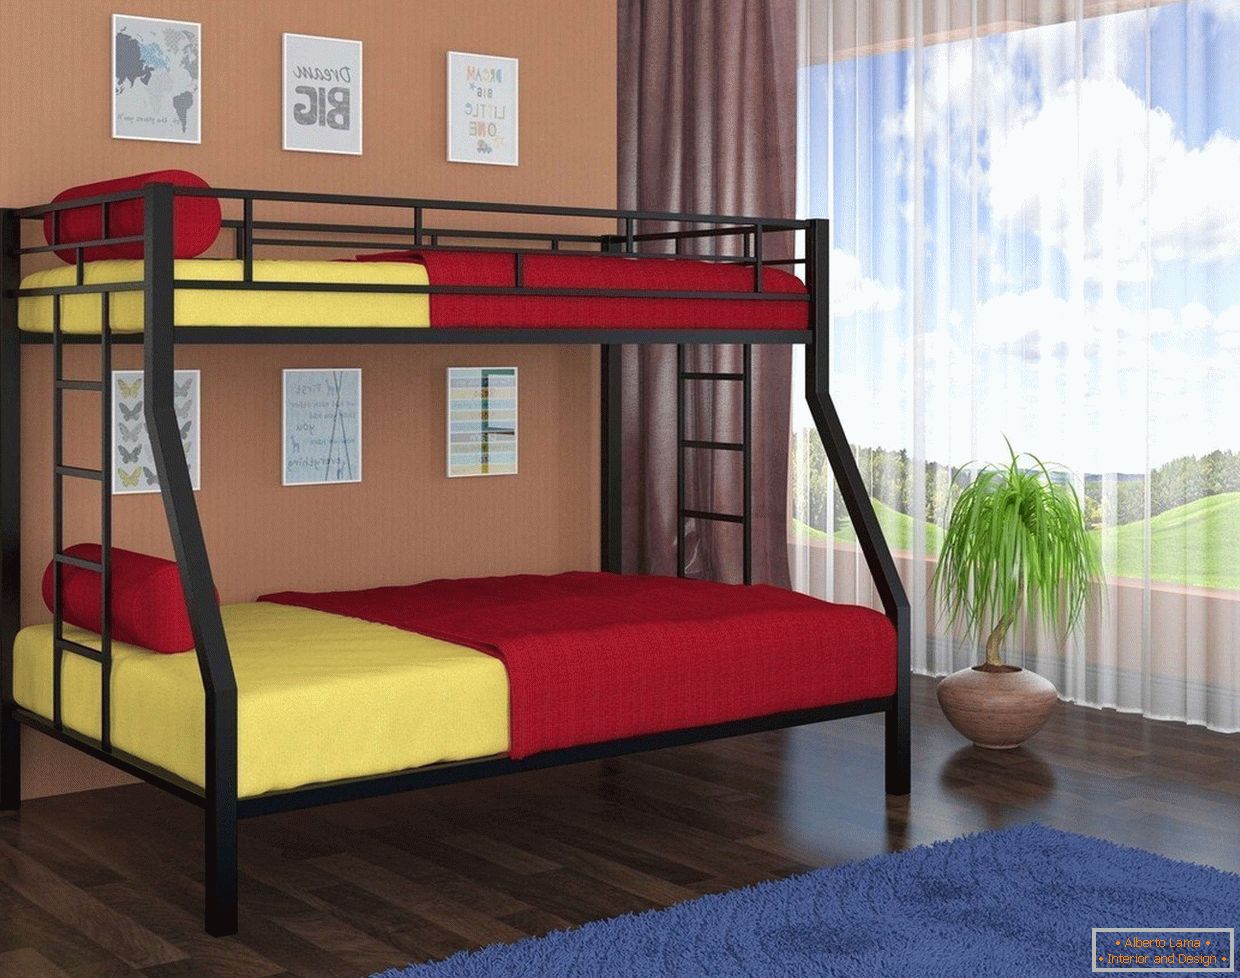 Sárga és piros ágynemű egy emeletes ágyban